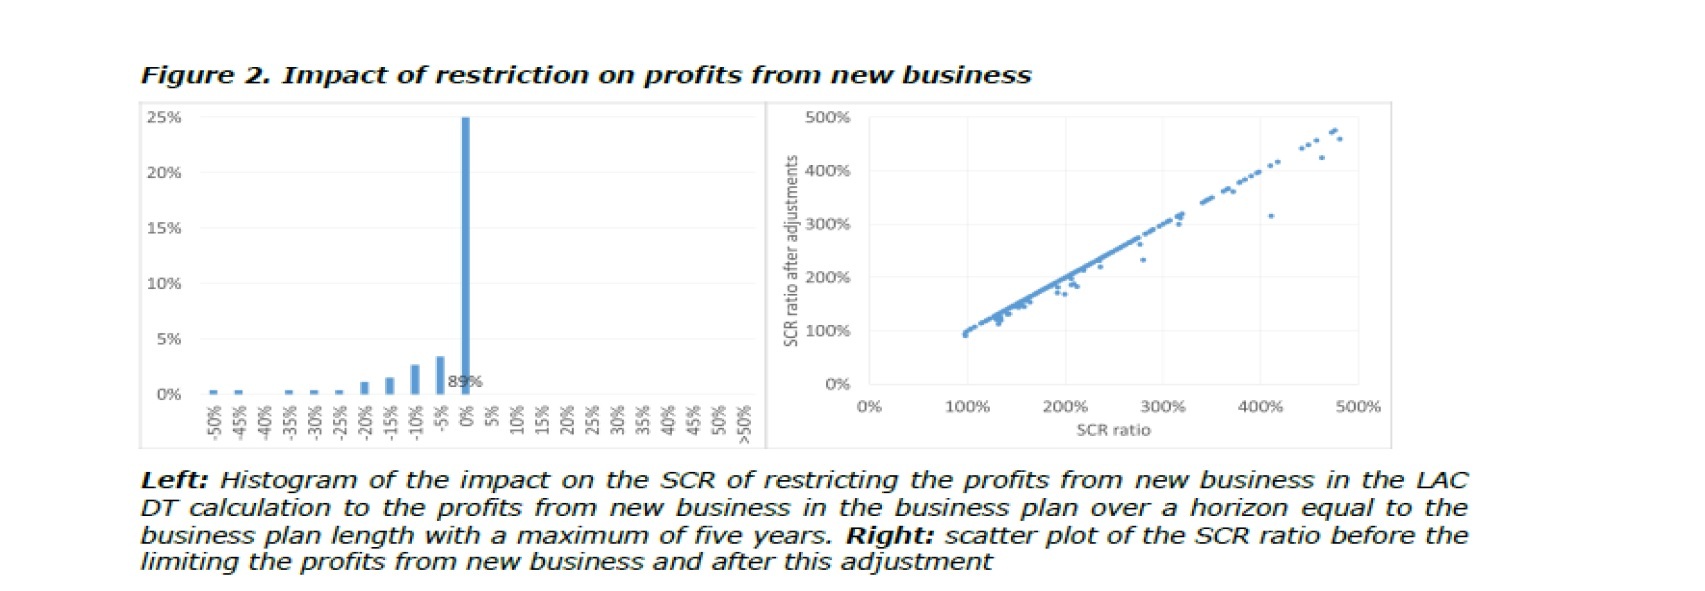 新契約の将来利益の制限を事業計画の範囲内に適用した後のSCR比率への影響